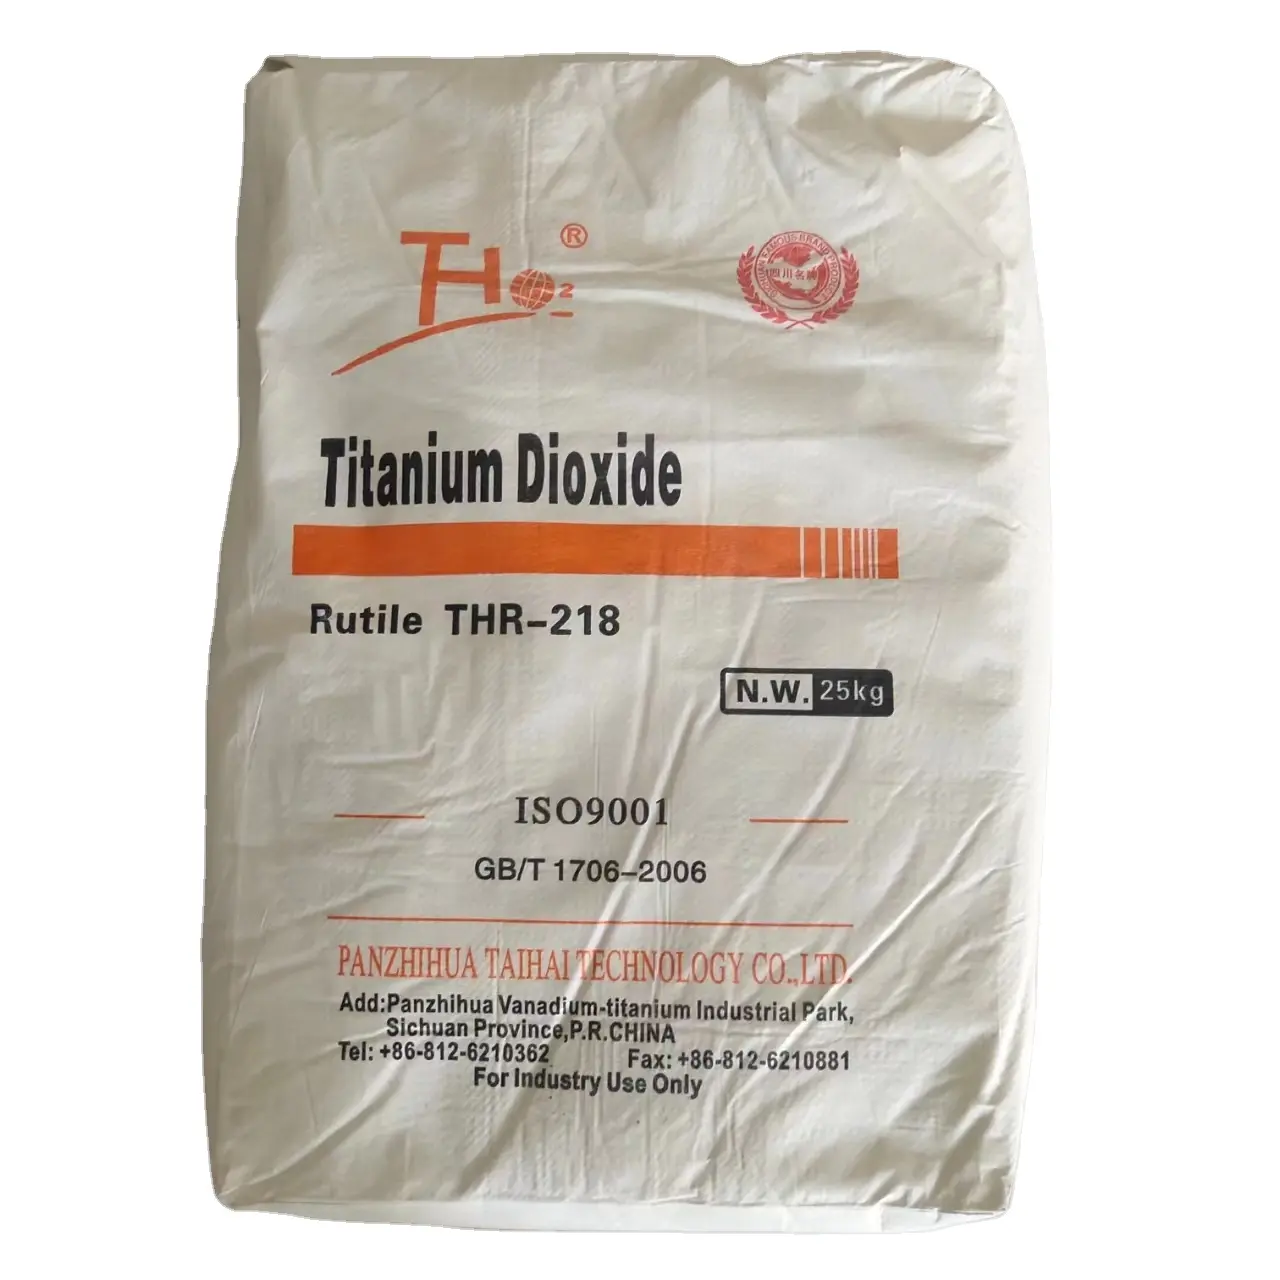 Tinta lapisan tinta Titanium dioksida cat th218 Harga titanium dioksida rutile kelas th218 harga rendah Tisea